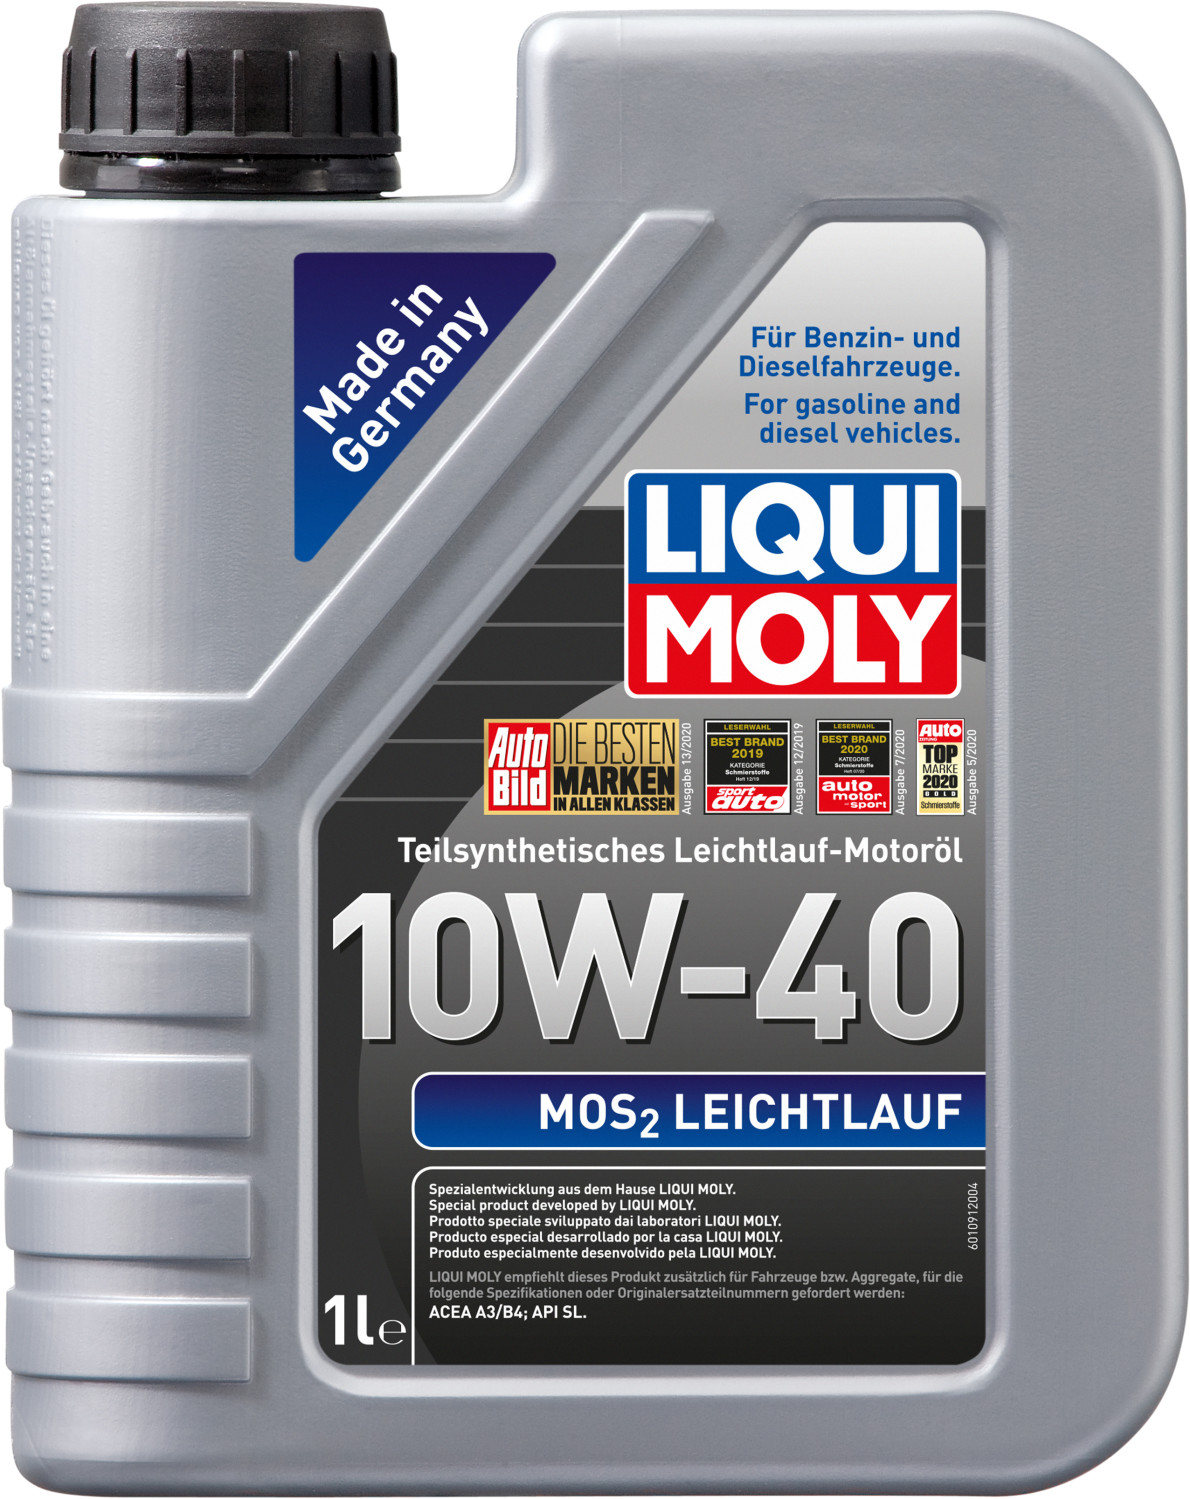 LIQUI MOLY MoS2 Leichtlauf 10W-40 ab 7,32 €